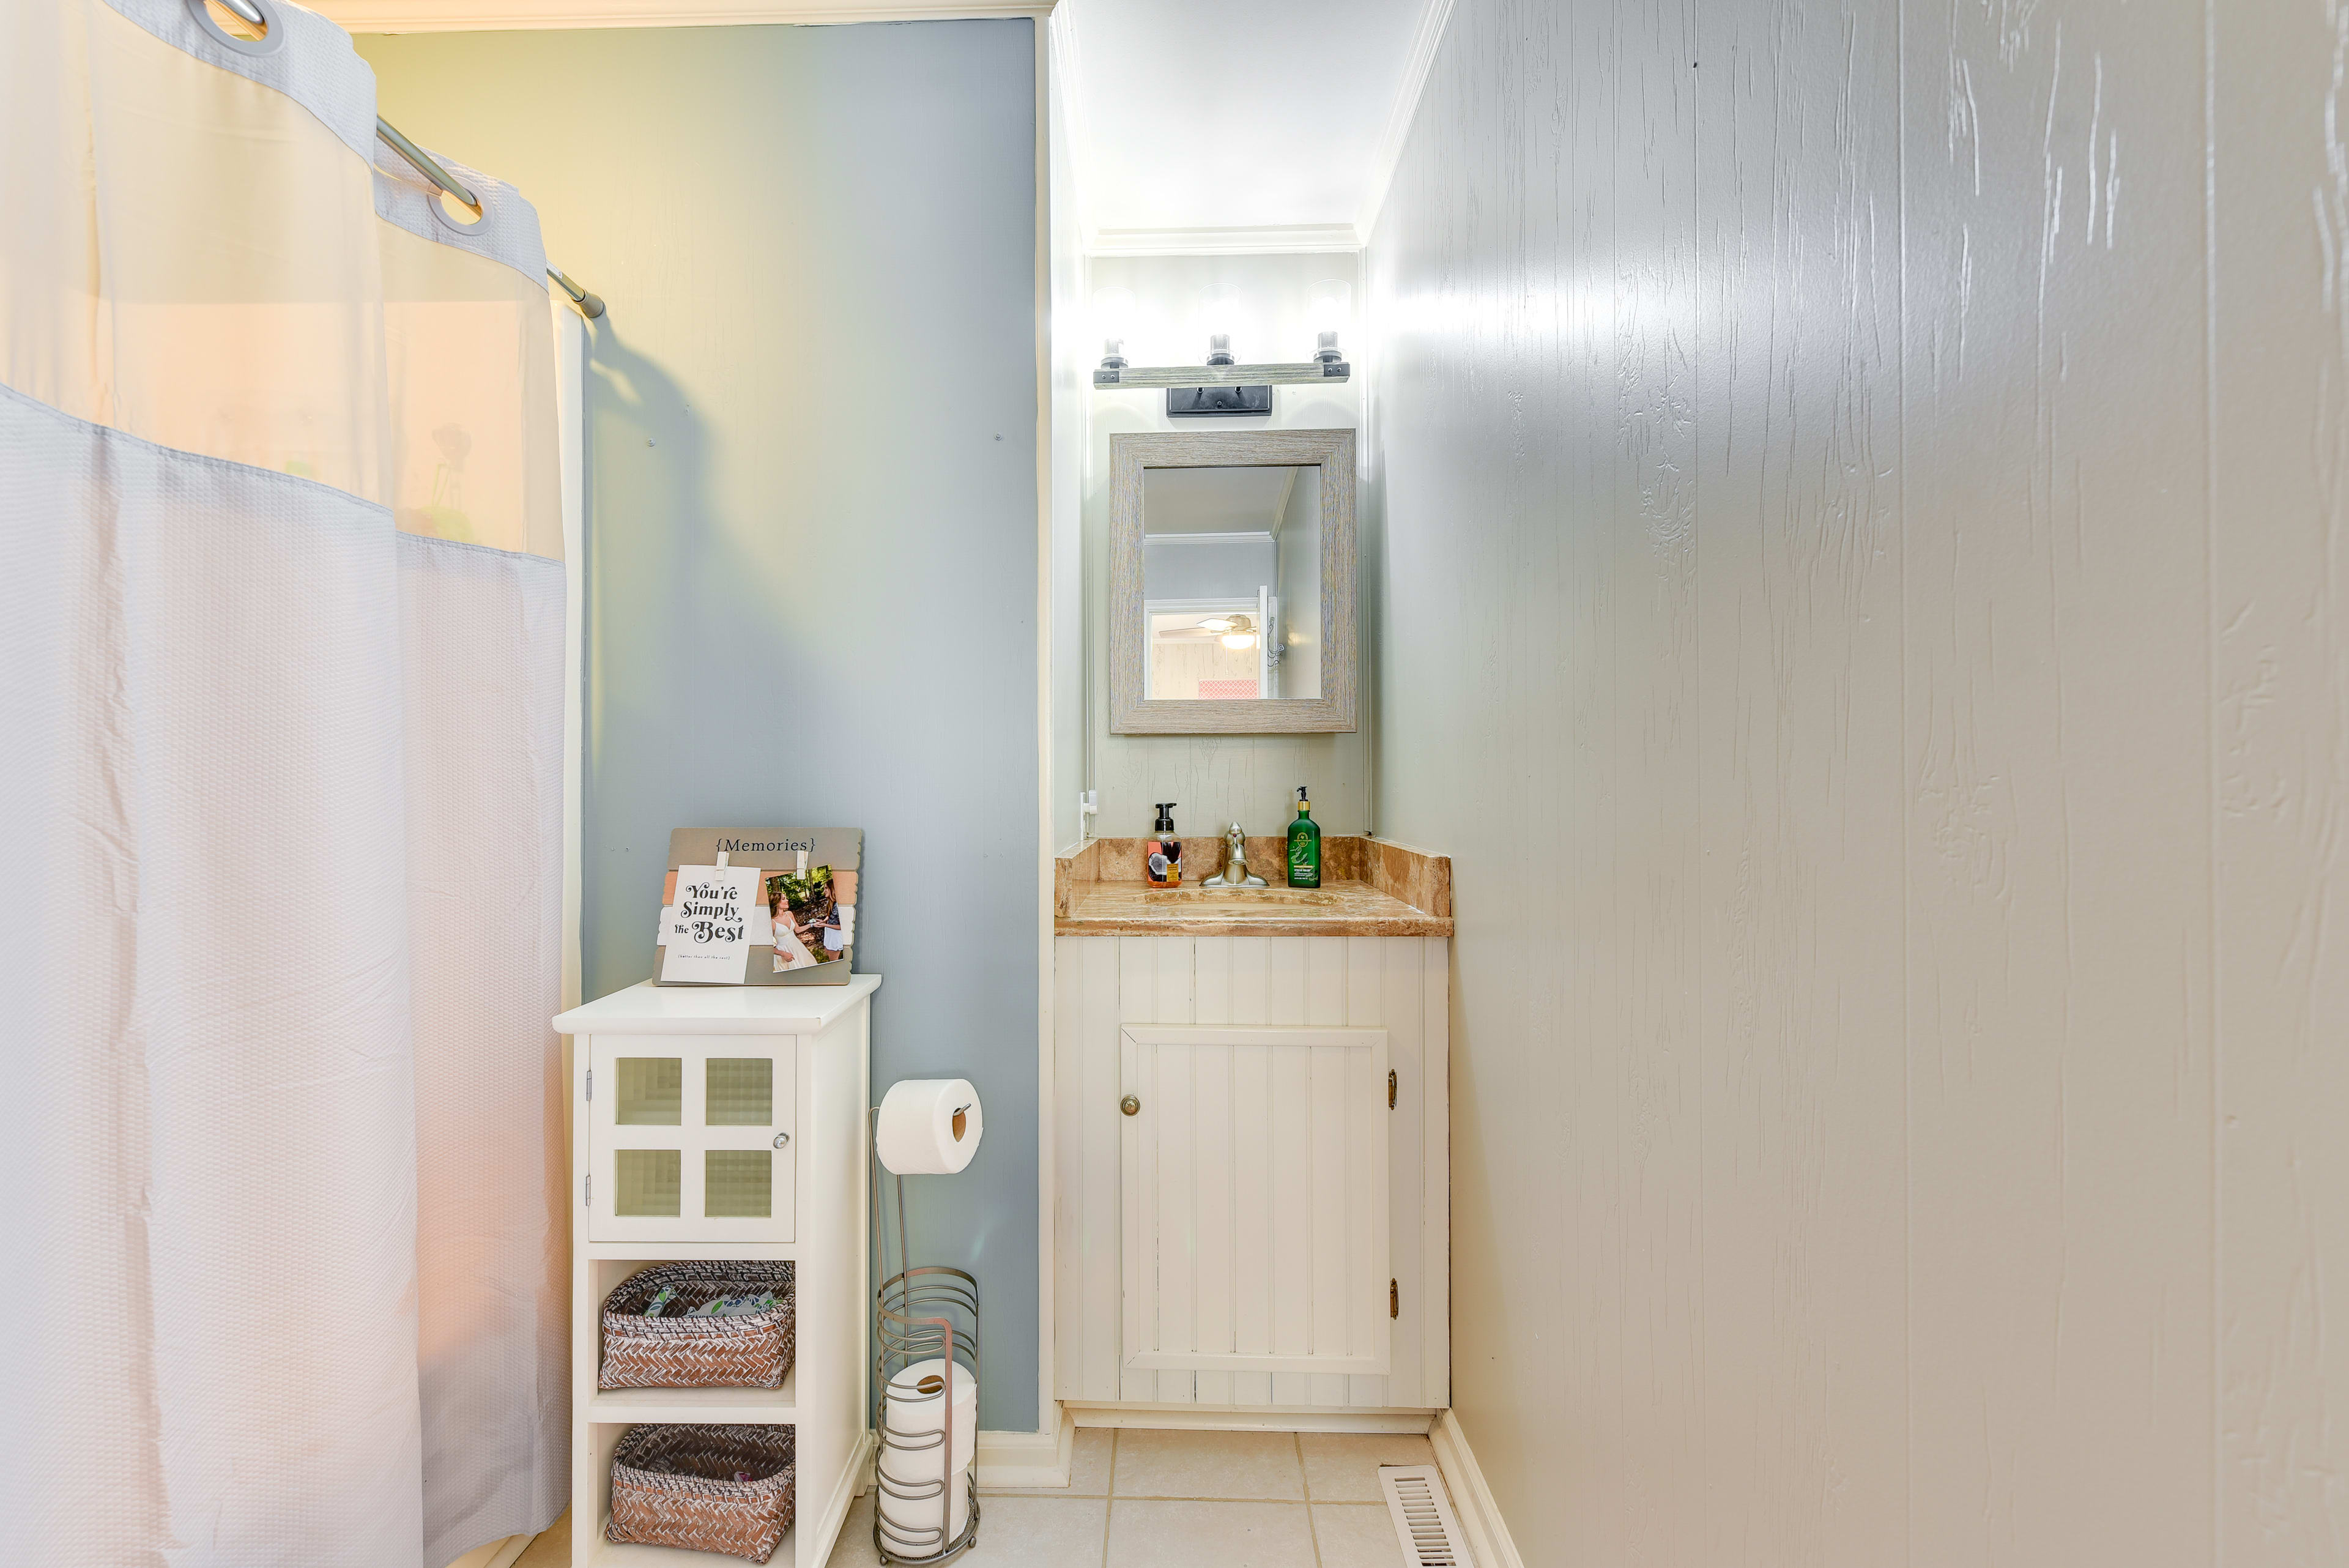 En-Suite Bathroom | Complimentary Toiletries | Hair Dryers | Grab Rail in Shower